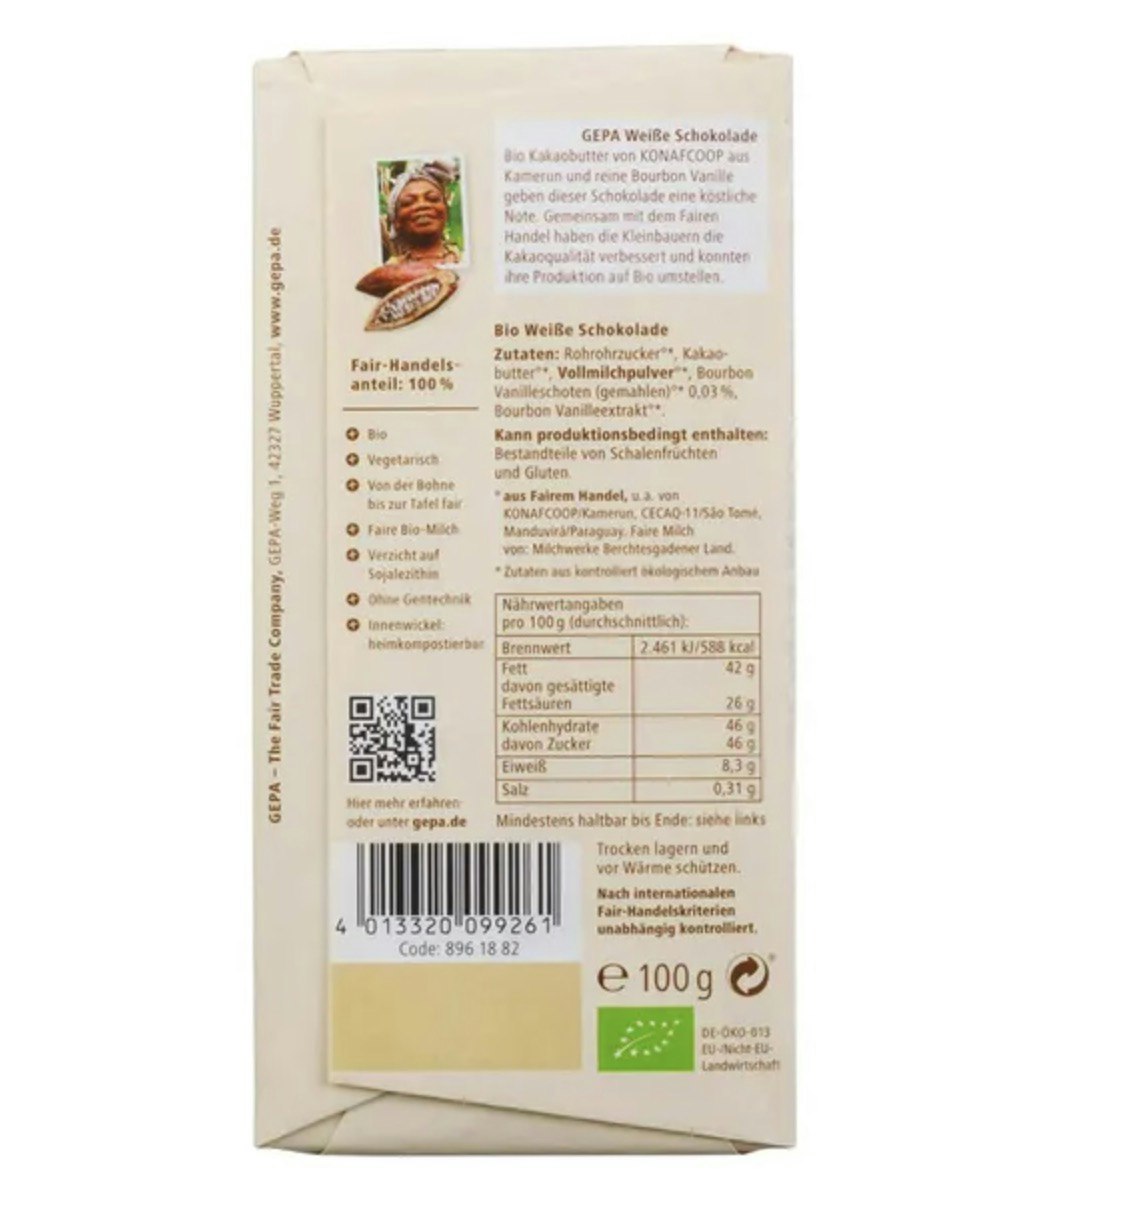 Vit chokladkaka, ekologisk och Fair Trade från tyska Gepa. Baksidan med uppgifter om näringshalt, eko-märkning och Fair Trade-info.